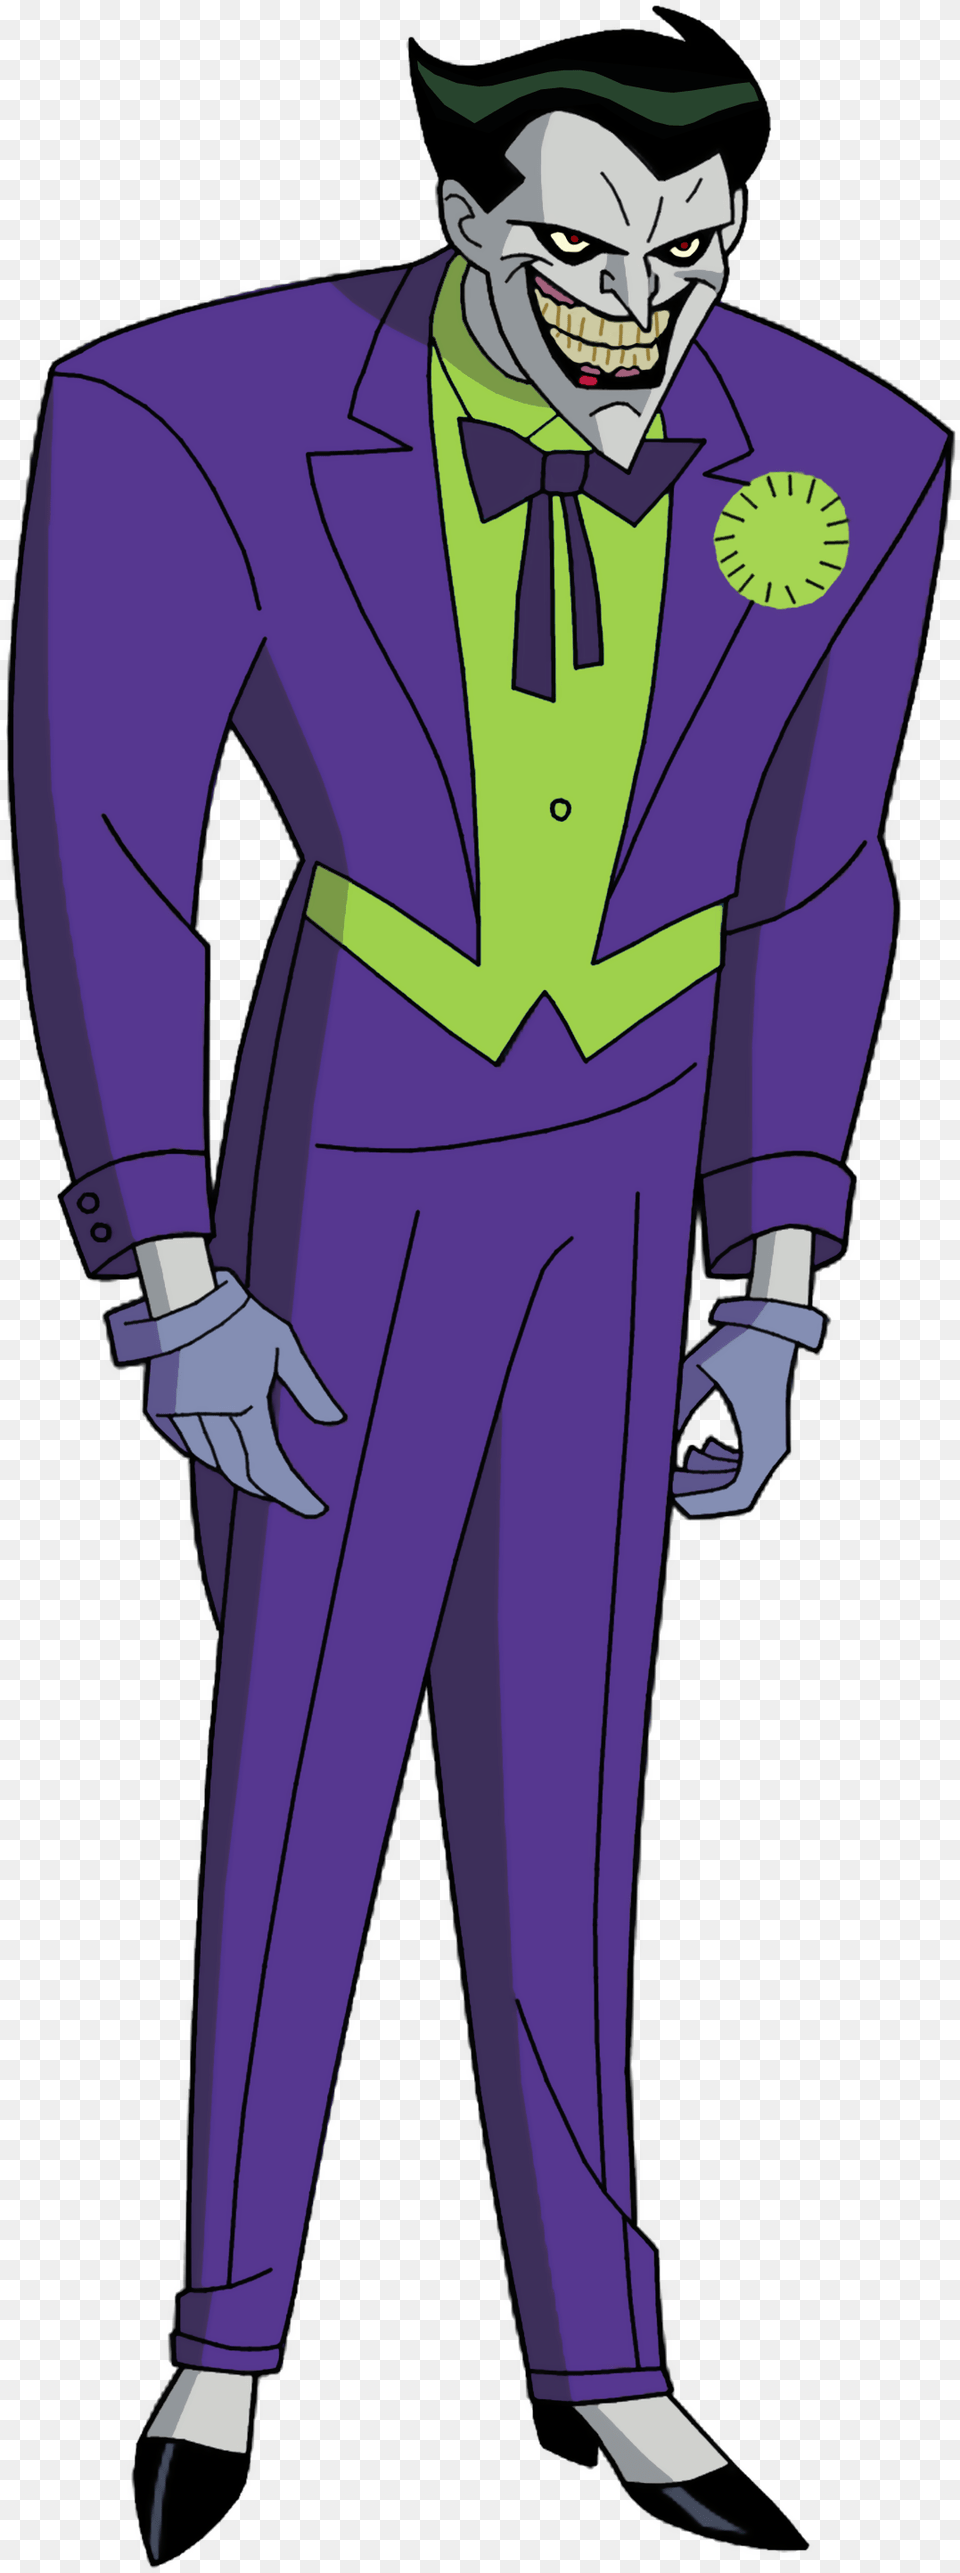 Image Villains Wiki Batman The New Adventures Joker, Suit, Book, Purple, Clothing Png